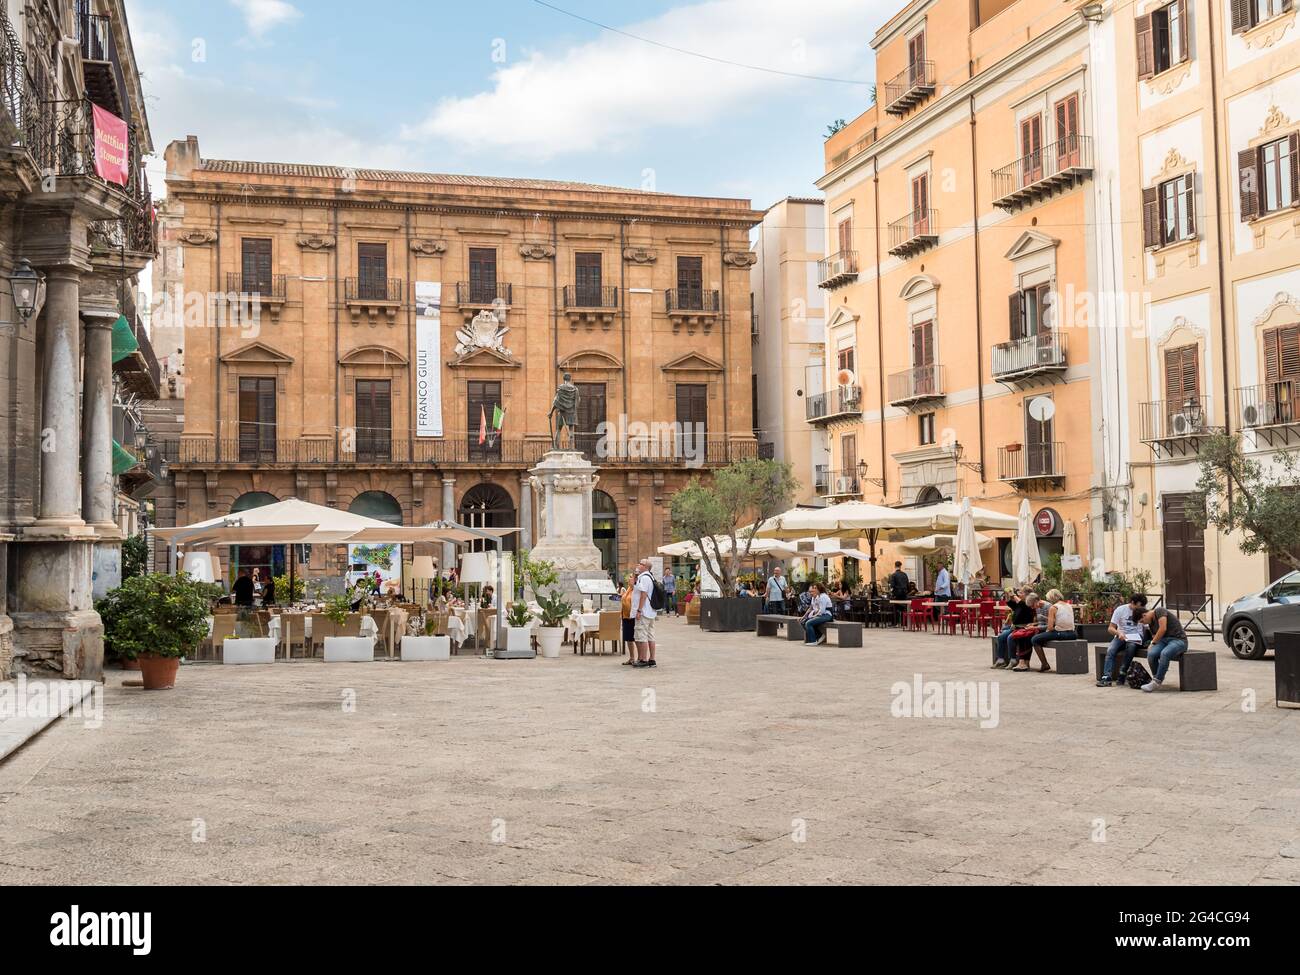 Palerme, Sicile, Italie - 6 octobre 2017 : place de la Bologni avec bar en plein air dans le centre historique de Palerme, Sicile, Italie Banque D'Images